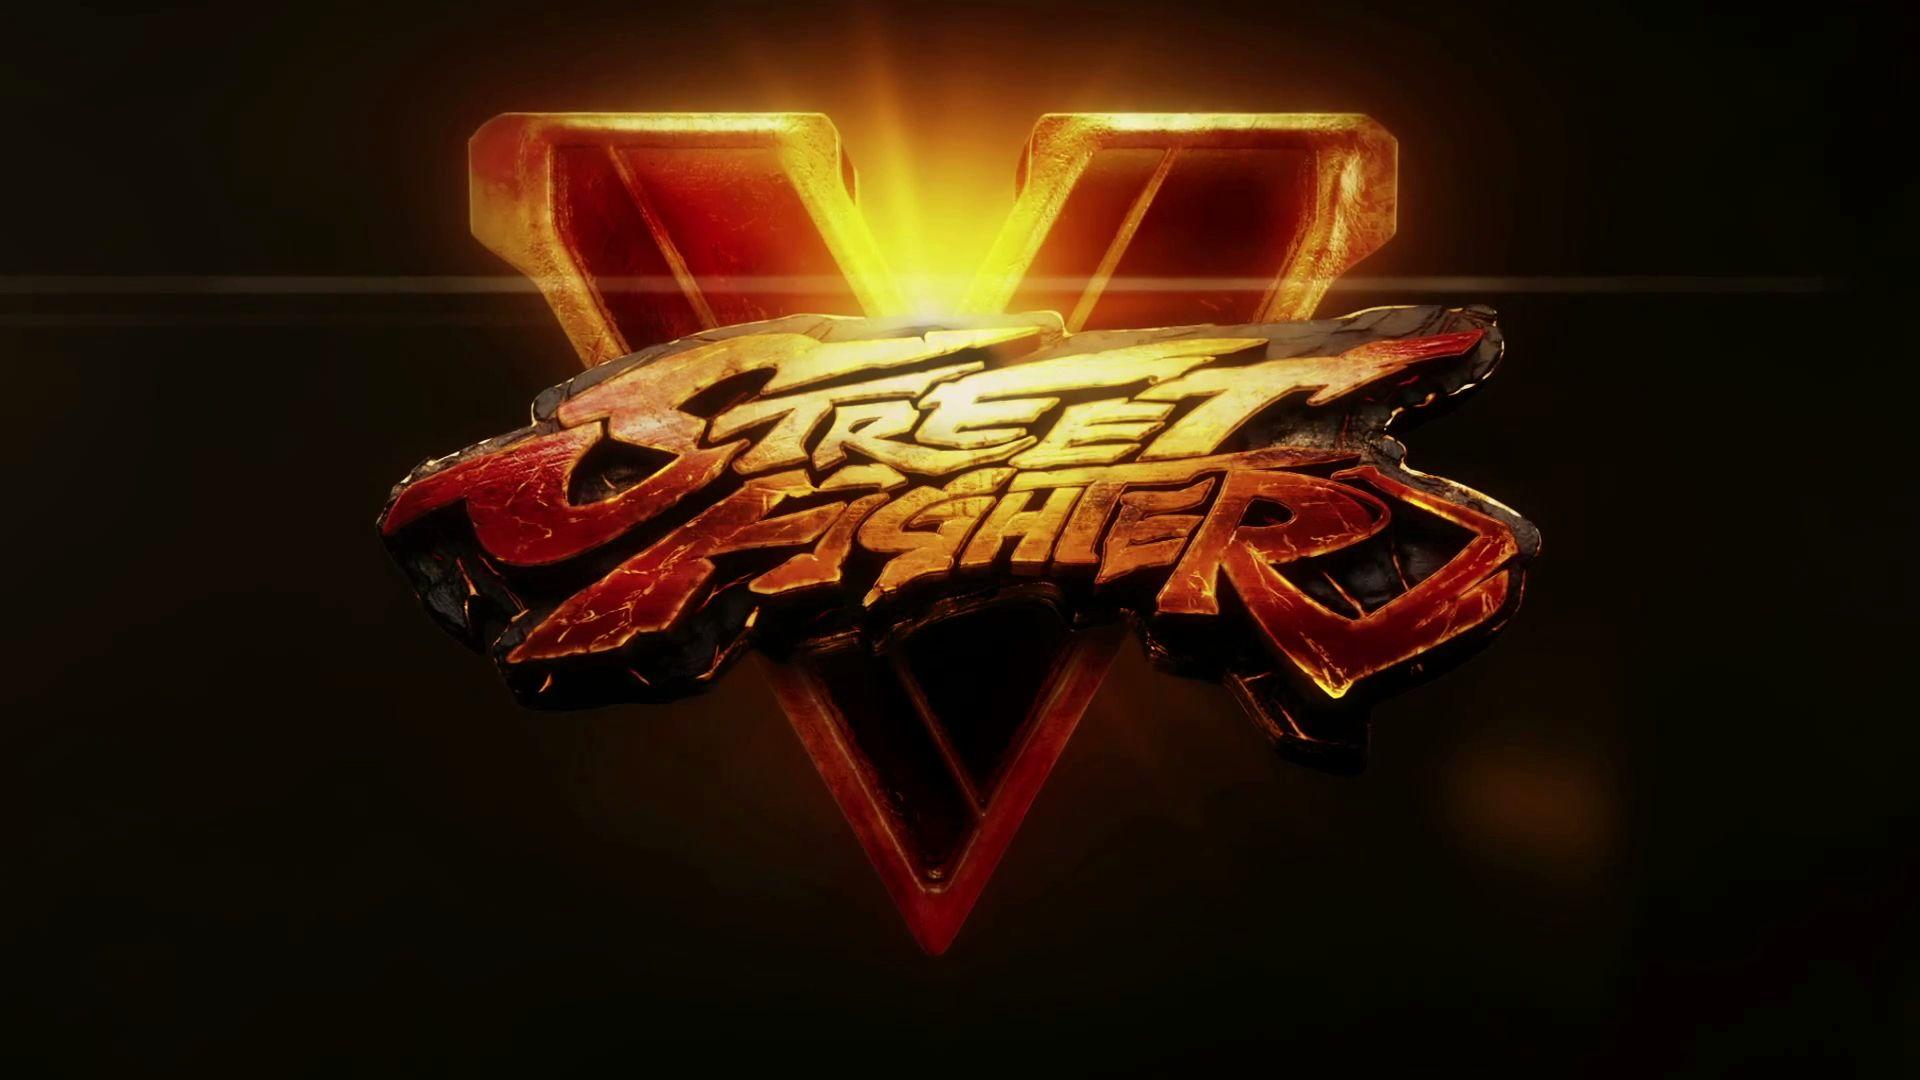 Street Fighter V Computer Wallpaper, Desktop Background